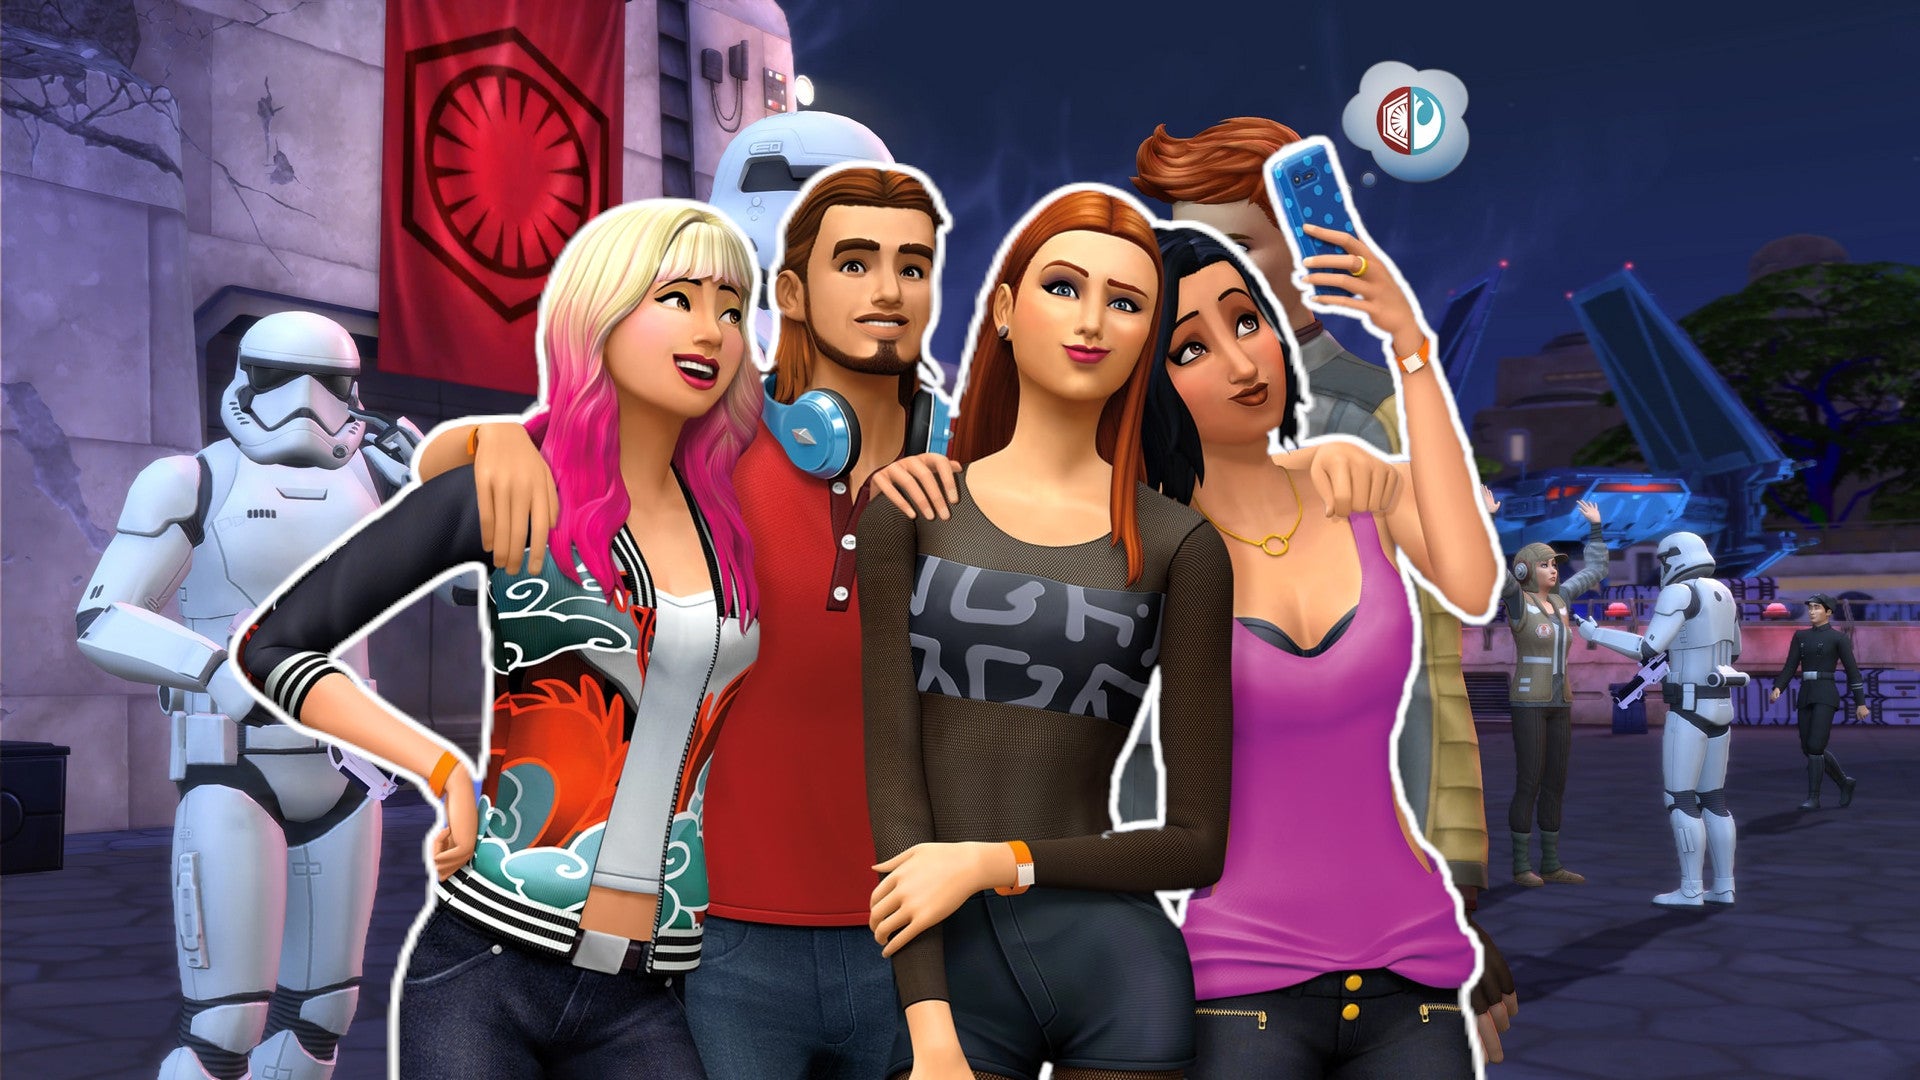 عنوان: The Sims 4 برای PS4: Create Your Virtual World

معرفی:

The Sims 4 که توسط Maxis توسعه یافته و توسط Electronic Arts منتشر شده است، یک بازی است که به بازیکنان اجازه می دهد زندگی های مجازی را ایجاد و کنترل کنند. این بازی شبیه‌سازی زندگی که در ابتدا برای رایانه‌های شخصی در سال 2014 منتشر شد، به پلی‌استیشن 4 راه یافت و به گیمرهای کنسول این فرصت را داد تا در دنیای عجیب و غریب و غیرقابل پیش‌بینی The Sims غوطه‌ور شوند. در این مقاله، به دنیای The Sims 4 بر روی PS4 می پردازیم و بررسی می کنیم که چه چیزی این بازی را جذاب و ماندگار کرده است.

۱- خانه رویایی خود را بسازید:

یکی از جذاب ترین جنبه های The Sims 4 توانایی طراحی و ساخت خانه رویایی شماست. چه بخواهید یک عمارت مجلل ایجاد کنید یا یک کلبه دنج، حالت ساخت / خرید بازی امکان سفارشی سازی بی پایان را فراهم می کند. کنترل‌های بصری روی PS4 شکل‌دهی و تجهیز فضای مجازی شما را آسان می‌کند و به خلاقیت شما اجازه می‌دهد تا بی‌حرمت شود. از انتخاب کاغذ دیواری تا قرار دادن مبلمان، امکانات تقریباً نامحدود است.

2. ساخت سیم‌های منحصربه‌فرد:

در The Sims 4، شما فقط خانه‌ها را طراحی نمی‌کنید. شما همچنین در حال ساخت سیم‌های منحصربه‌فرد هستید. خلق شخصیت یک فرآیند عمیق و لذت بخش است که در آن می توانید هر جنبه از ظاهر و شخصیت سیمز خود را شخصی سازی کنید. سیمزهای شما از مدل مو و لباس گرفته تا آرزوها و خصلت هایشان می توانند به همان اندازه که شما می خواهید منحصر به فرد باشند. مایه خوشحالی است که می بینیم زندگی سیمز شما بر اساس انتخاب هایی که می کنید چگونه پیش می رود.

3. کاوش در محله های پر جنب و جوش:

این بازی دارای محله های پر جنب و جوش مختلفی برای کشف است که هر کدام جذابیت منحصر به فرد خود را دارند. چه بخواهید در شهر شلوغ San Myshuno زندگی کنید یا از آرامش Willow Creek لذت ببرید، محله ای برای هر سبک بازی وجود دارد. نسخه PS4 تضمین می‌کند که پیمایش در این محله‌ها روان و شهودی است و به شما امکان می‌دهد با دیگر سیم‌ها تعامل داشته باشید و به طور یکپارچه در فعالیت‌های مختلف شرکت کنید.

4. تعقیب رویاها و آرزوها:

هر سیم کارت آرزوها و اهدافی دارد. خواه تبدیل شدن به یک سرآشپز معروف، یک موسیقیدان موفق، یا یک باغبان چیره دست، شما سیمزهای خود را به سمت رویاهایشان هدایت خواهید کرد. دیدن اینکه سیم‌های شما به اهداف و آرزوهایشان می‌رسند بسیار رضایت‌بخش است و این دستاوردها می‌تواند تأثیر قابل‌توجهی بر زندگی آنها داشته باشد.

5. الحاقات و DLC:

Sims 4 برای PS4 طیف وسیعی از بسته‌های الحاقی و محتوای قابل دانلود (DLC) را ارائه می‌کند که تجربه بازی را افزایش و گسترش می‌دهد. از افزودن مشاغل جدید و عناصر ماوراء طبیعی گرفته تا معرفی حیوانات خانگی و تعطیلات استوایی، این بسط ها بازی را تازه و هیجان انگیز نگه می دارند.

6. انجمن سیمز:

یکی از لذت بخش ترین جنبه های The Sims 4، جامعه قوی و خلاقانه آن است. بازیکنان خلاقیت ها، داستان ها و چالش های خود را به صورت آنلاین به اشتراک می گذارند و حس رفاقت را در بین Simmers در سراسر جهان ایجاد می کنند. نسخه PS4 به شما امکان می دهد به این انجمن پر جنب و جوش بپیوندید و Sims و داستان های منحصر به فرد خود را با دیگران به اشتراک بگذارید.

نتیجه:

خرید بازی The Sims 4 برای PS4
